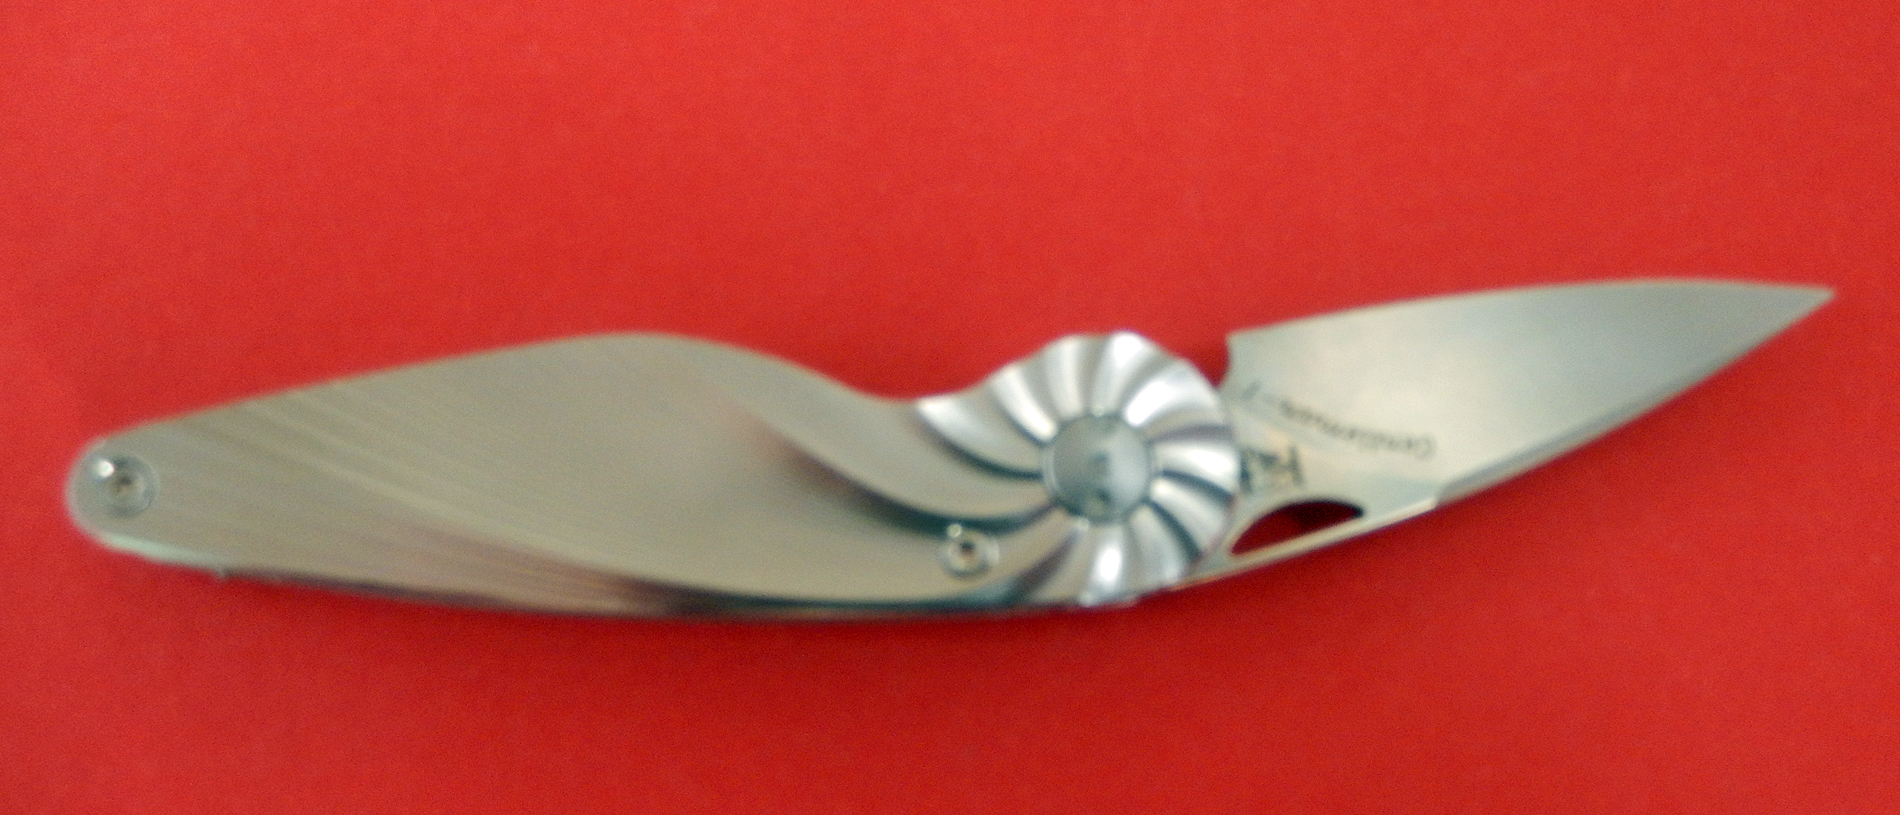 Einhandmesser Taschenmesser 5,4 cm Edelstahl-Heft von Eickhorn  Made in SG bei ISS